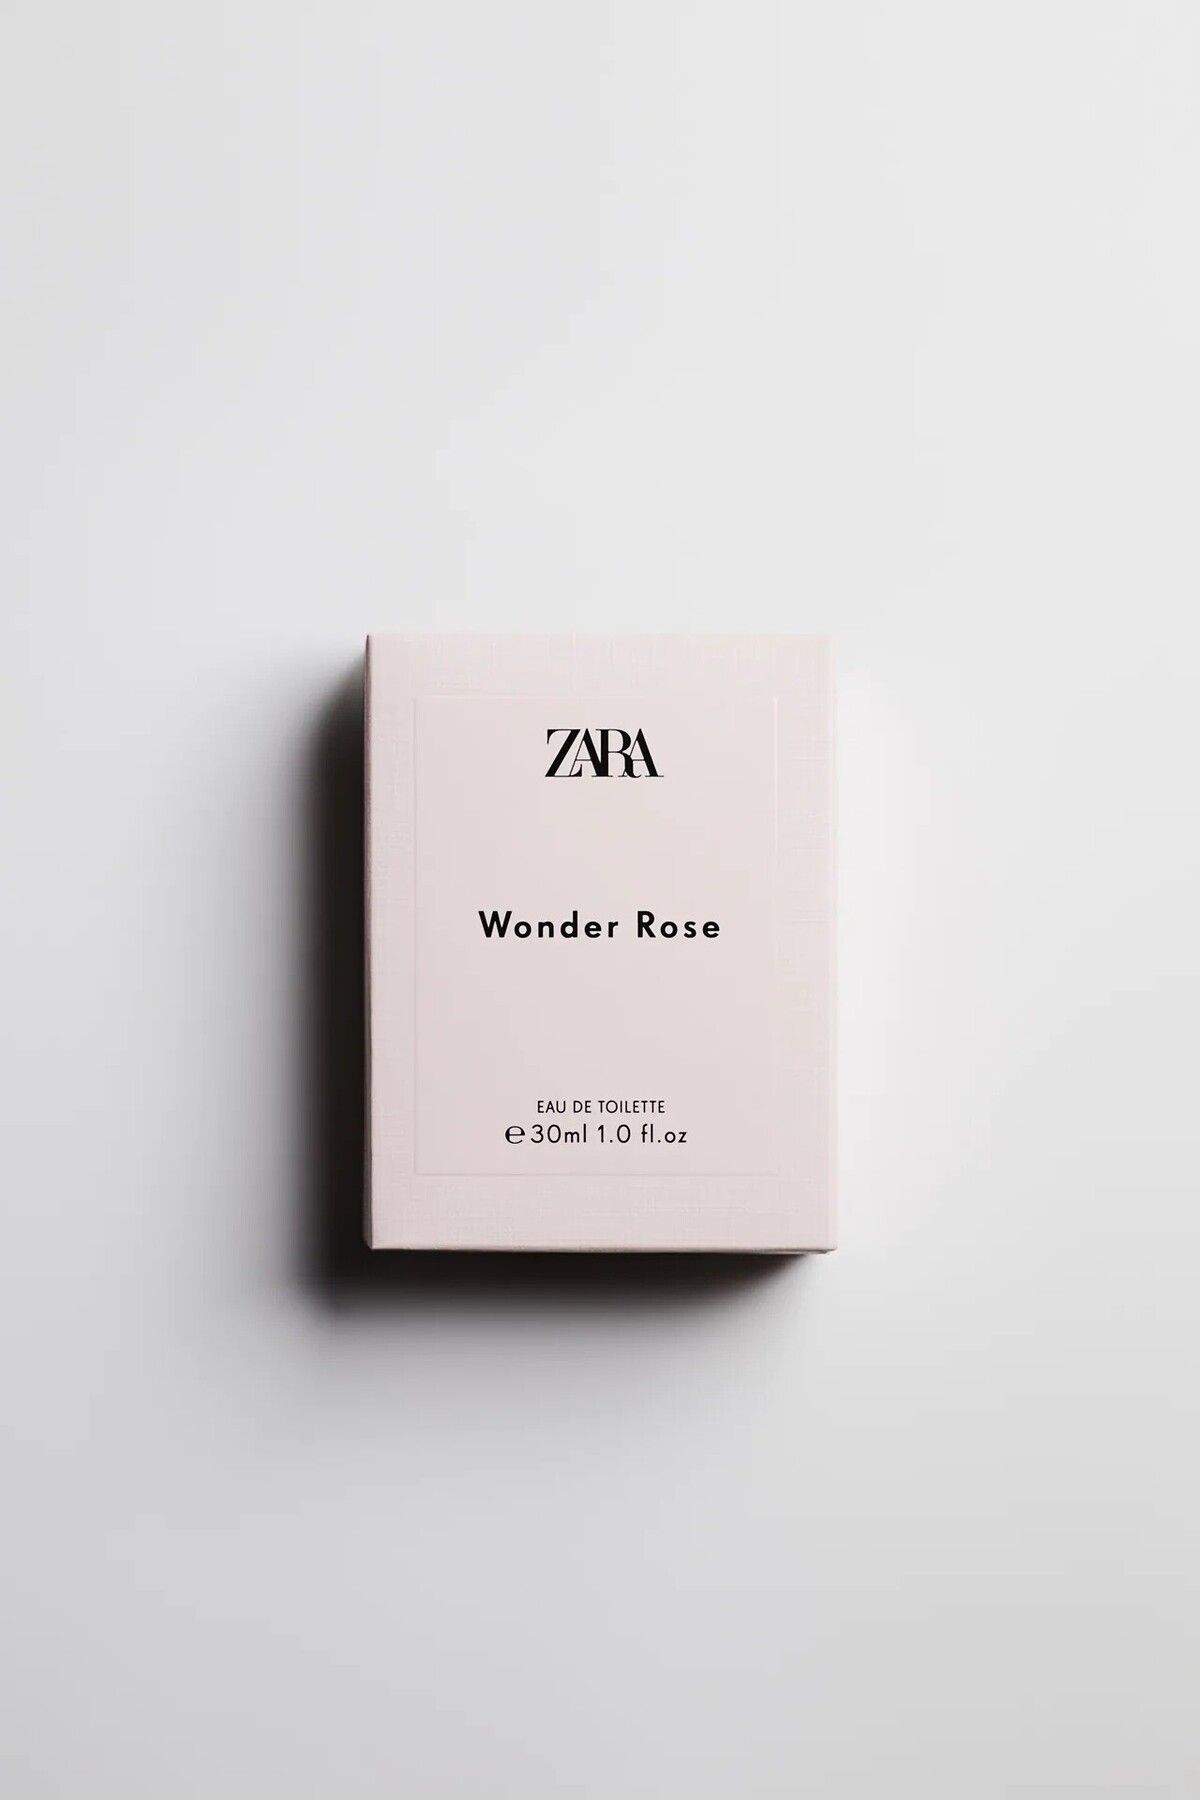 Zara Wonder Rose Edt 30 ml (1.0 FL. OZ). Kadın Parfüm